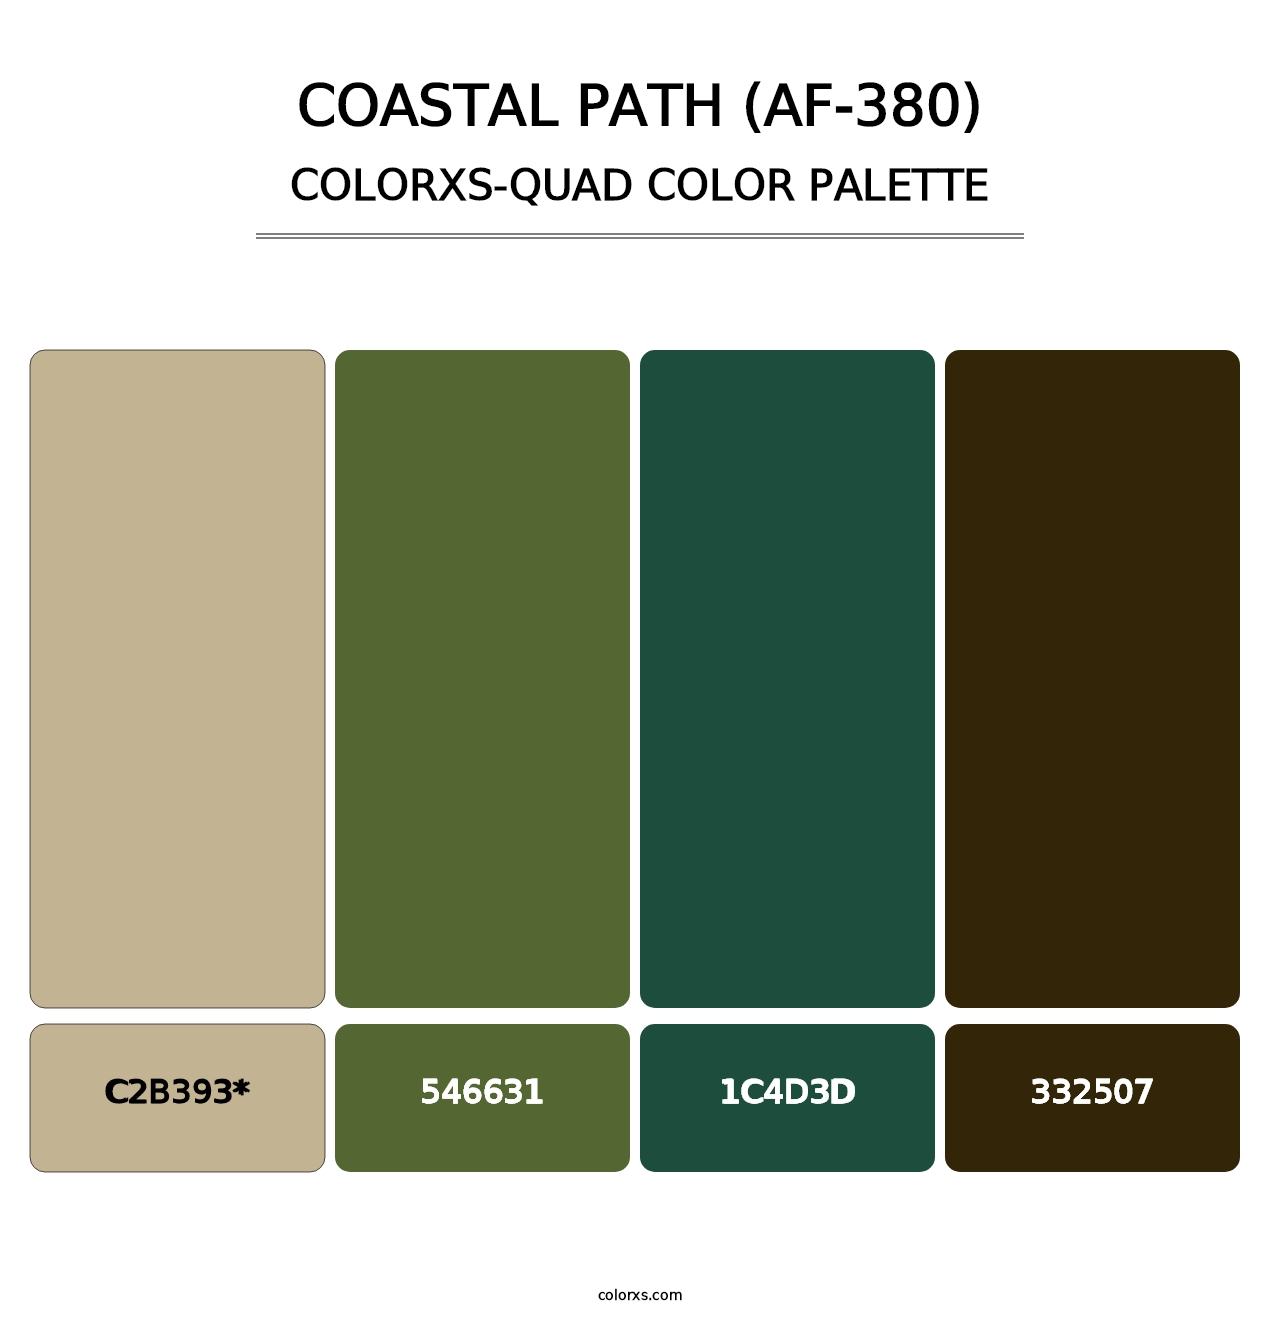 Coastal Path (AF-380) - Colorxs Quad Palette